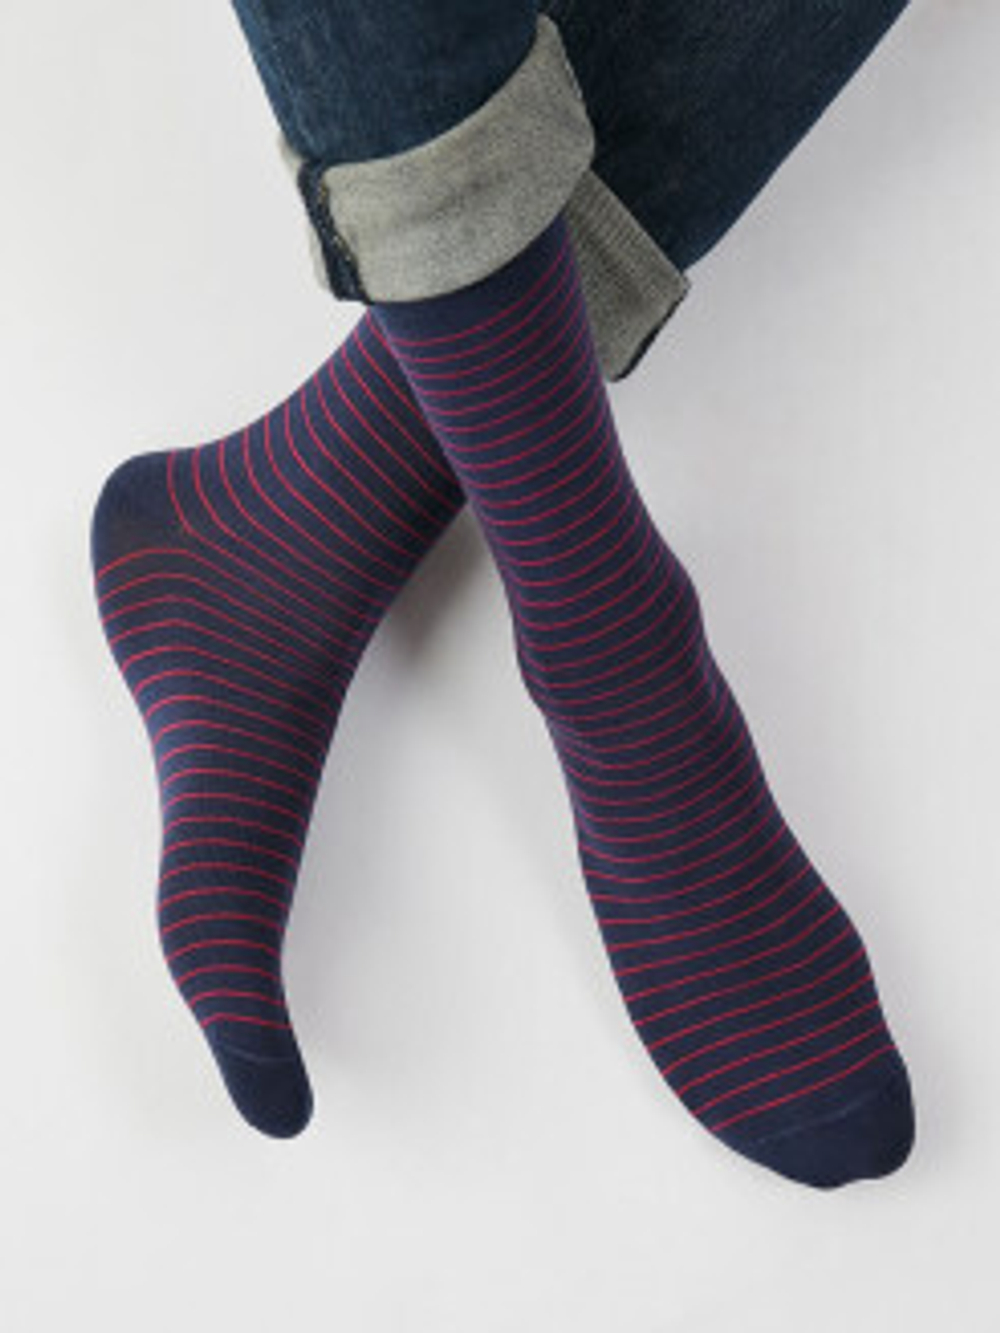 OMSA STYLE 501 носки мужские в полоску